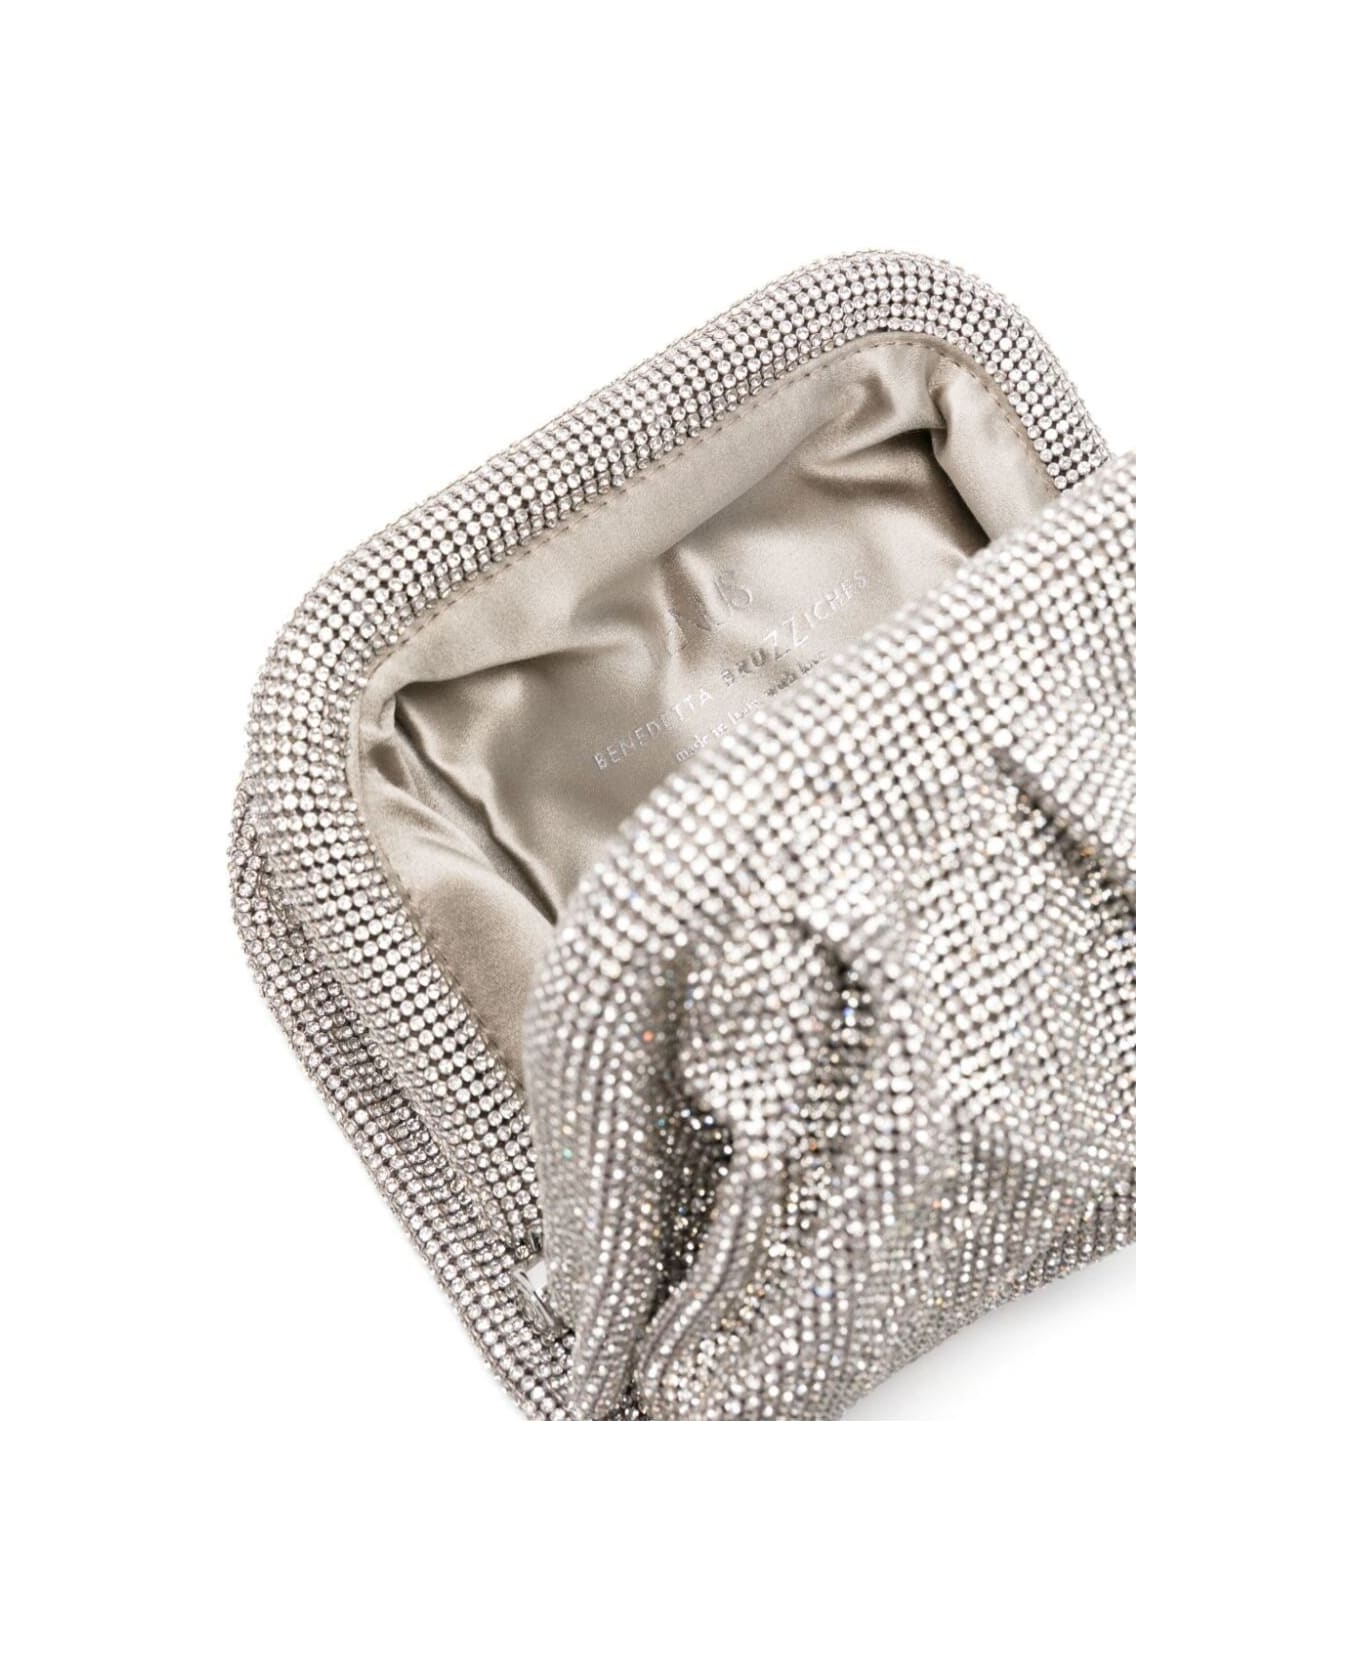 Benedetta Bruzziches 'venus La Petite' Silver Clutch Bag In Fabric With Allover Crystals Woman